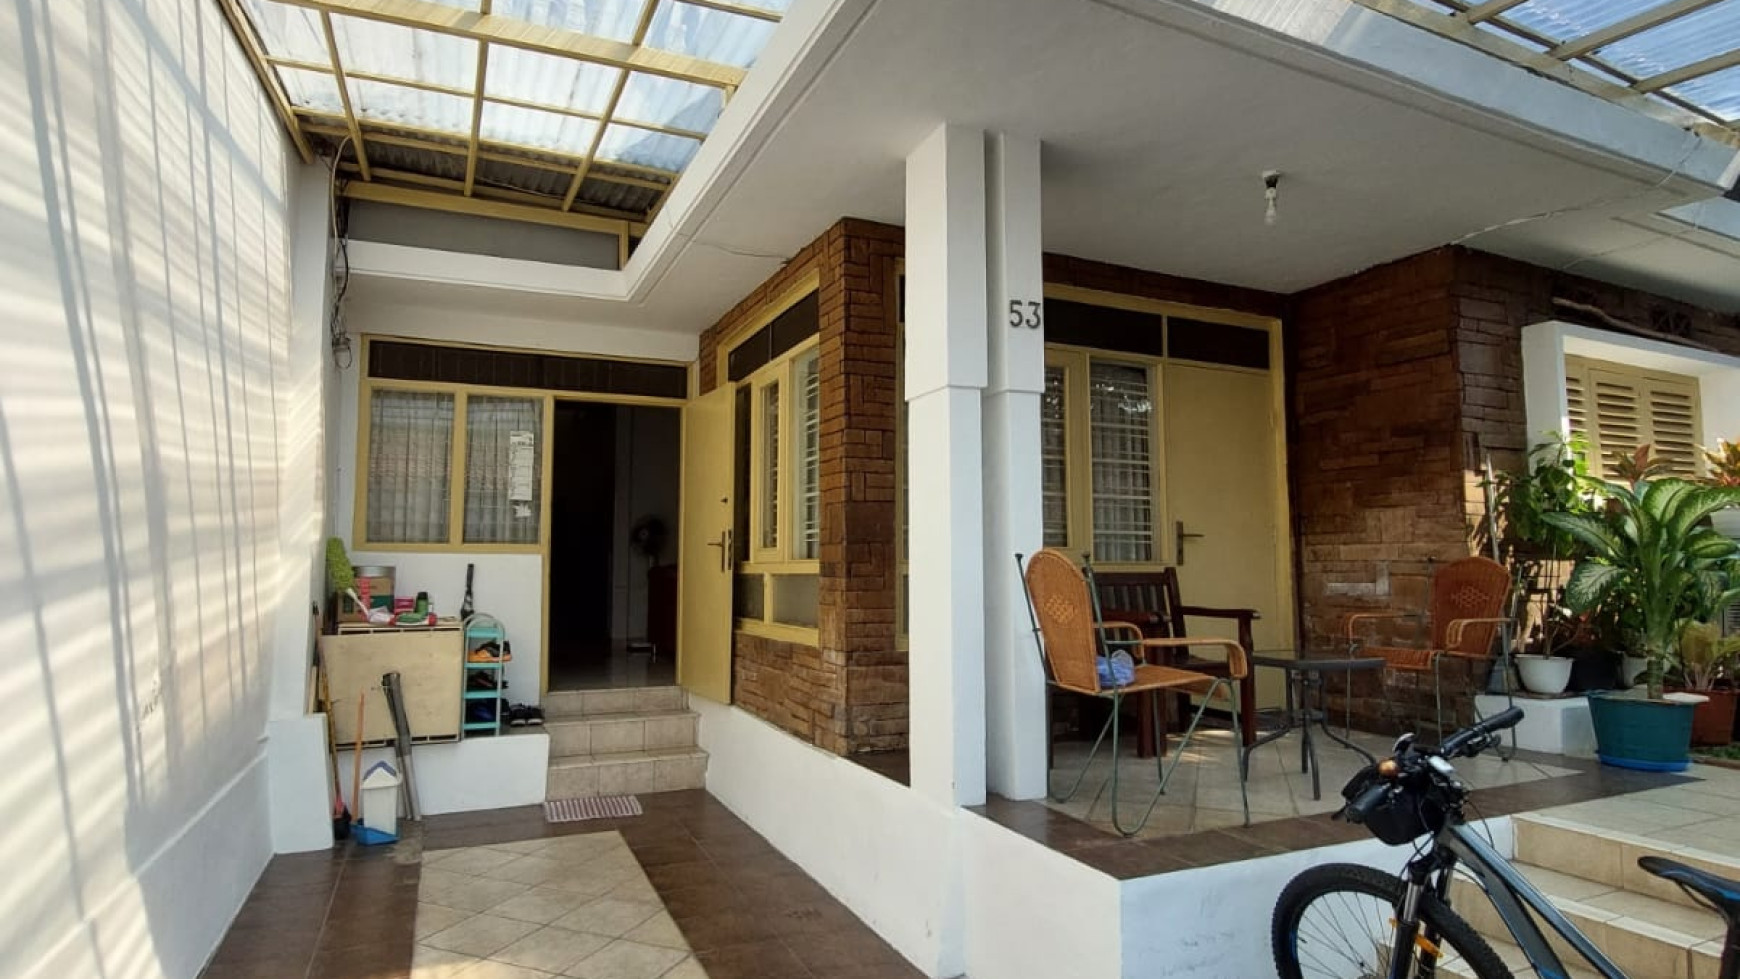 Rumah minimalis modern 2 lantai  Jl. Tebet barat  Jakarta Selatan